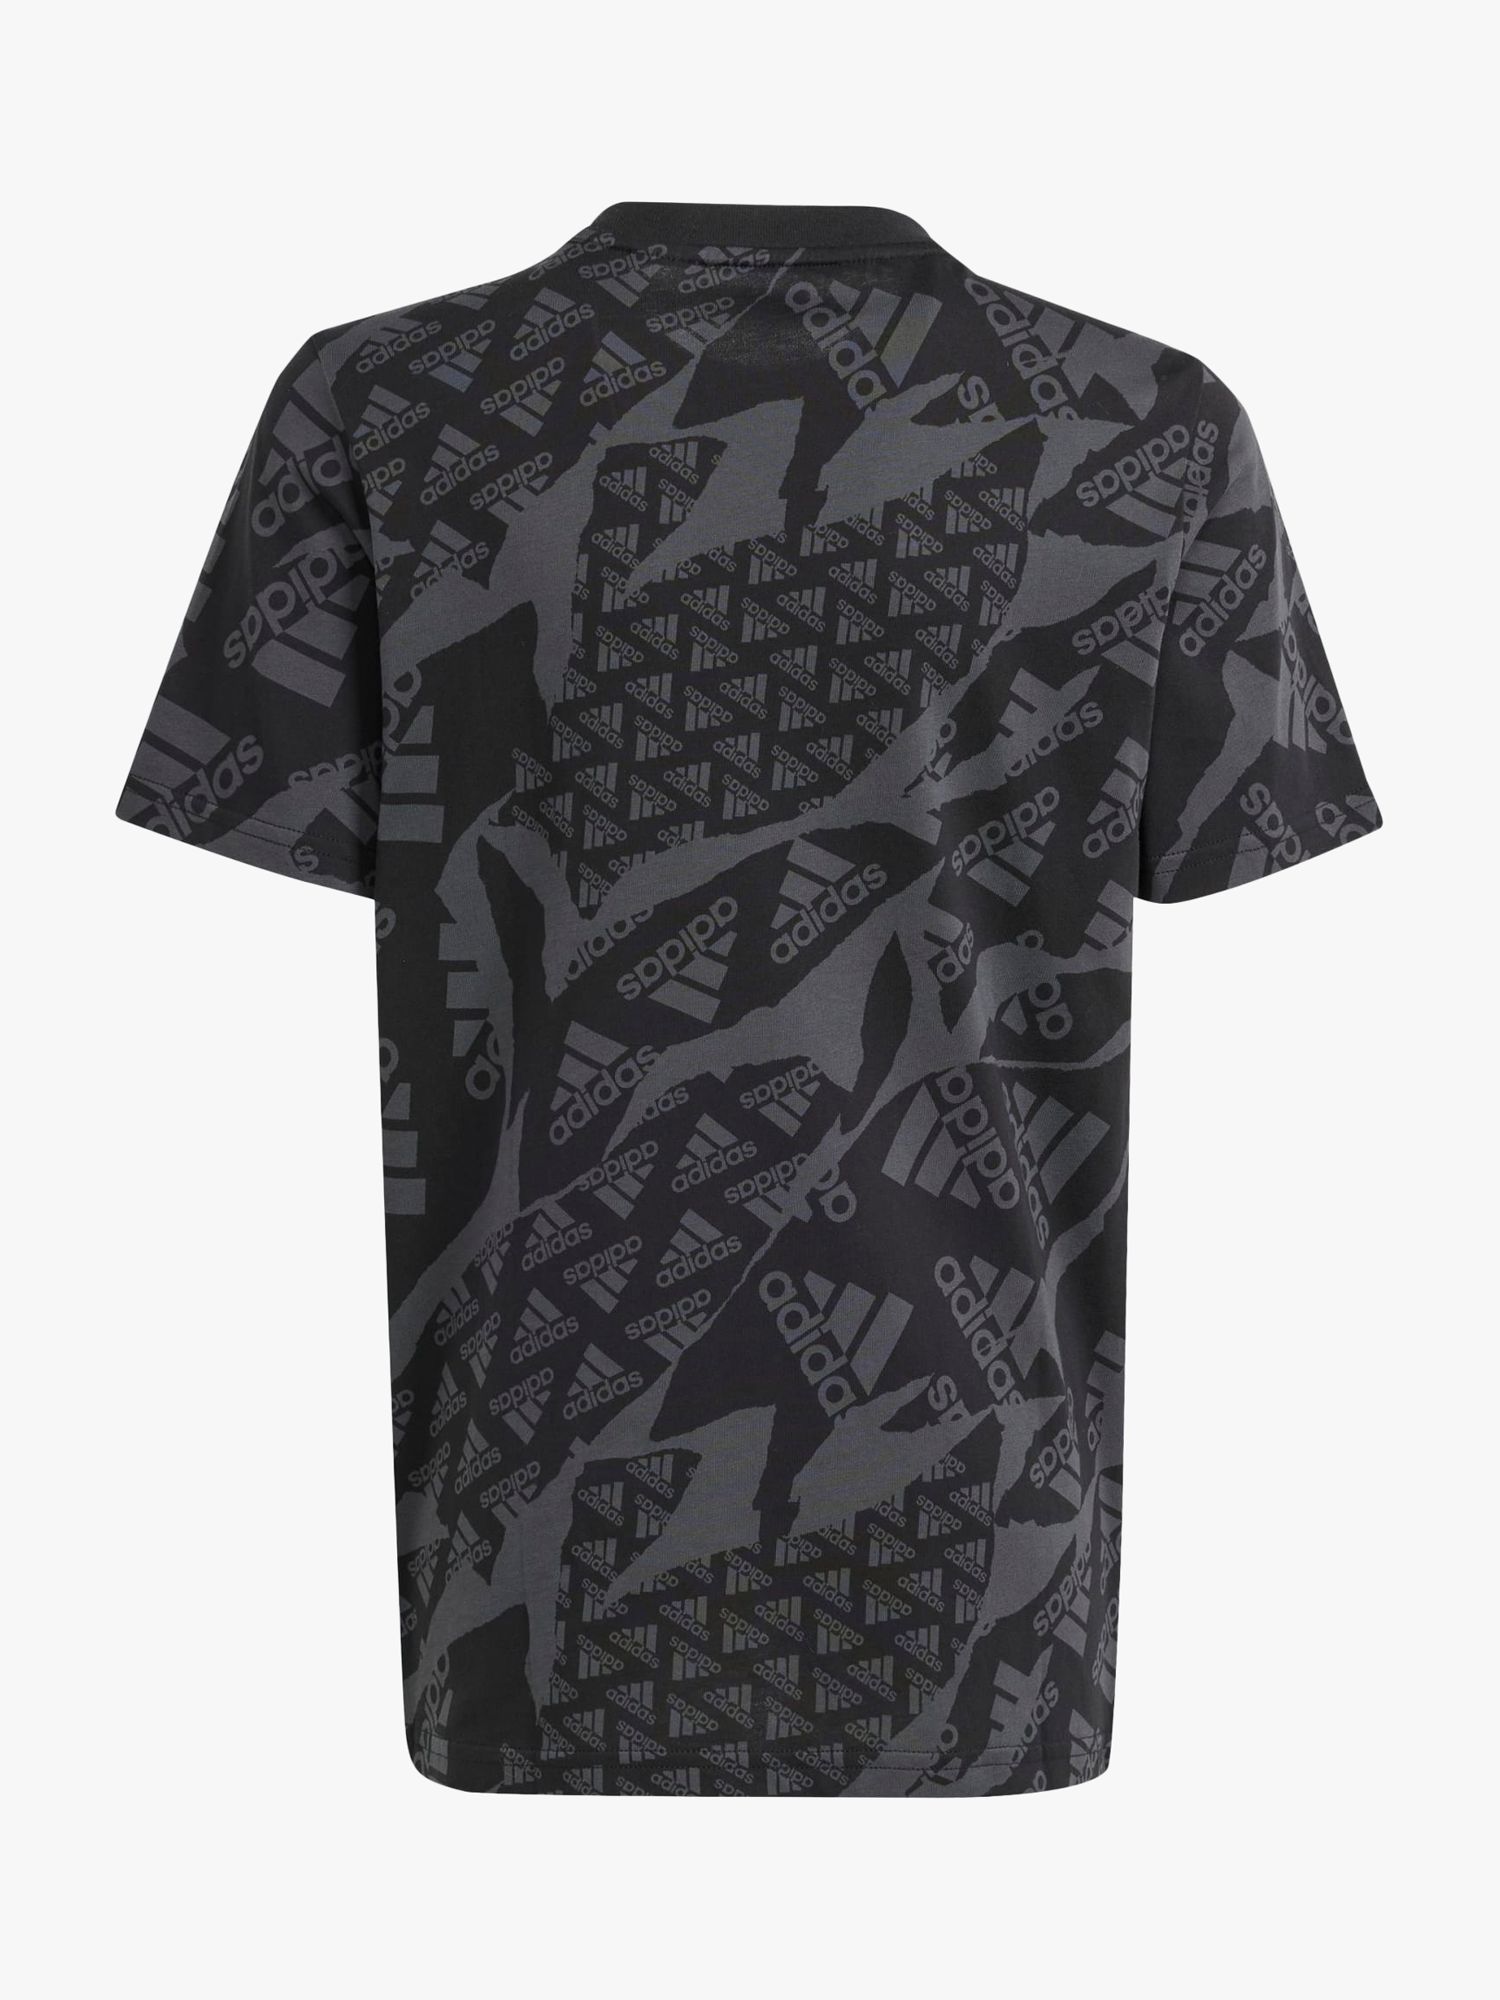 Buy adidas Kids' Camo Logo T-Shirt, Camo/Black Online at johnlewis.com